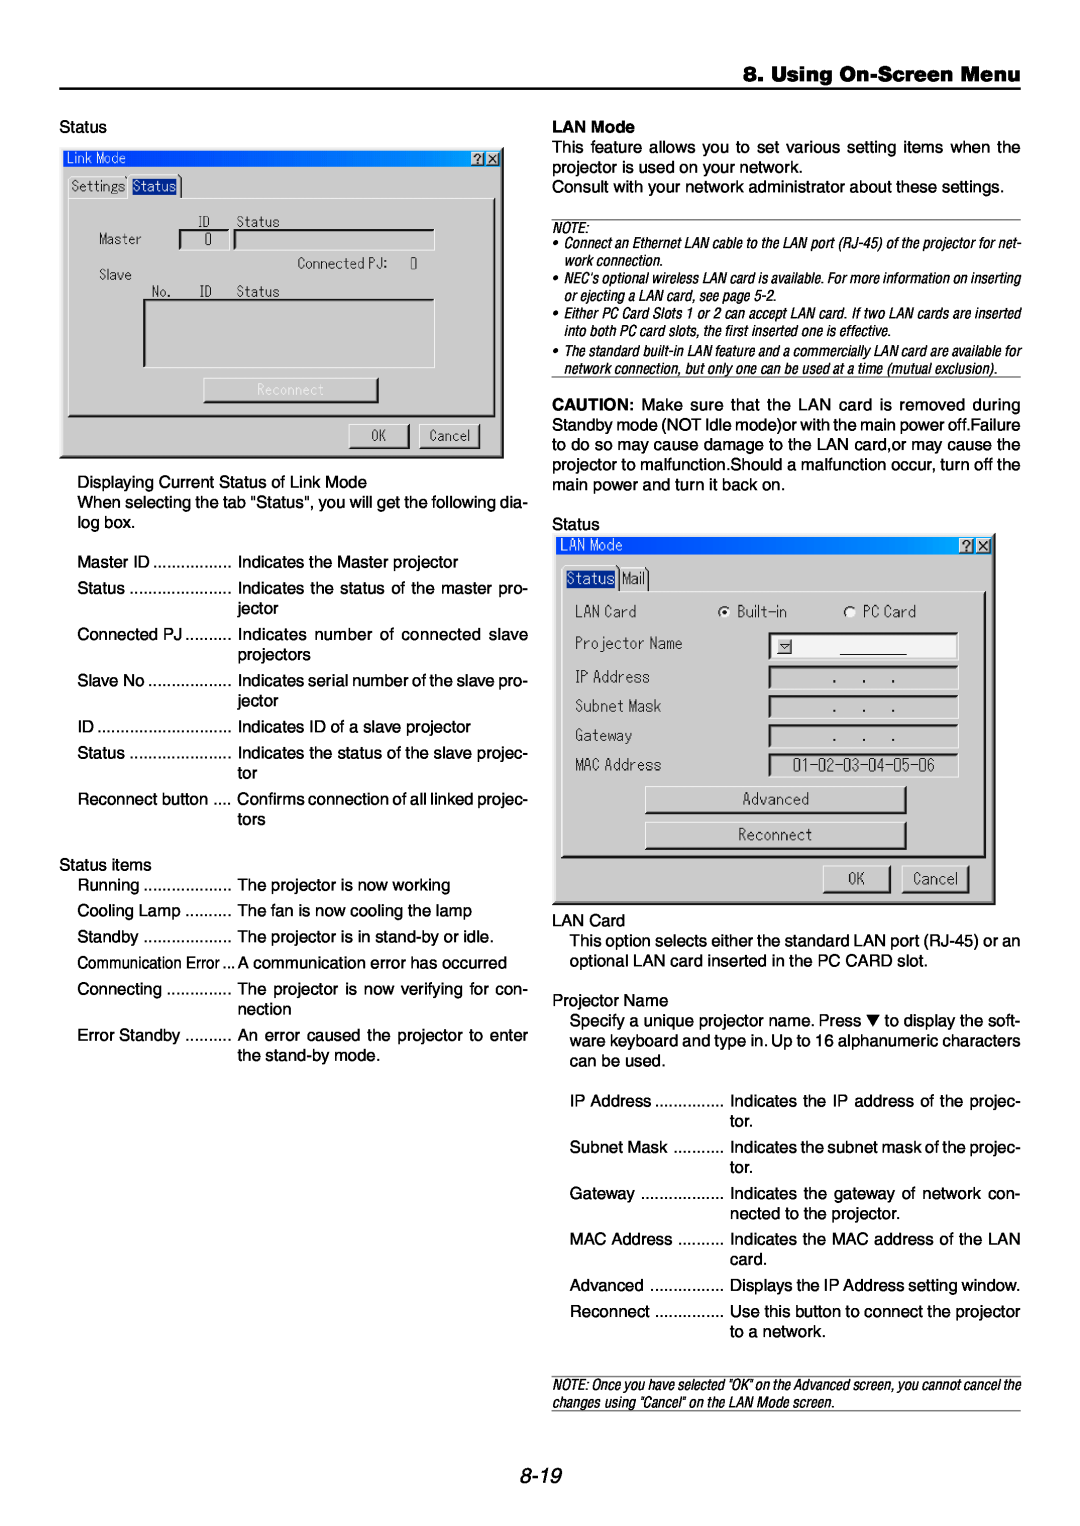 NEC GT6000 user manual Using On-ScreenMenu, 8-19, LAN Mode 